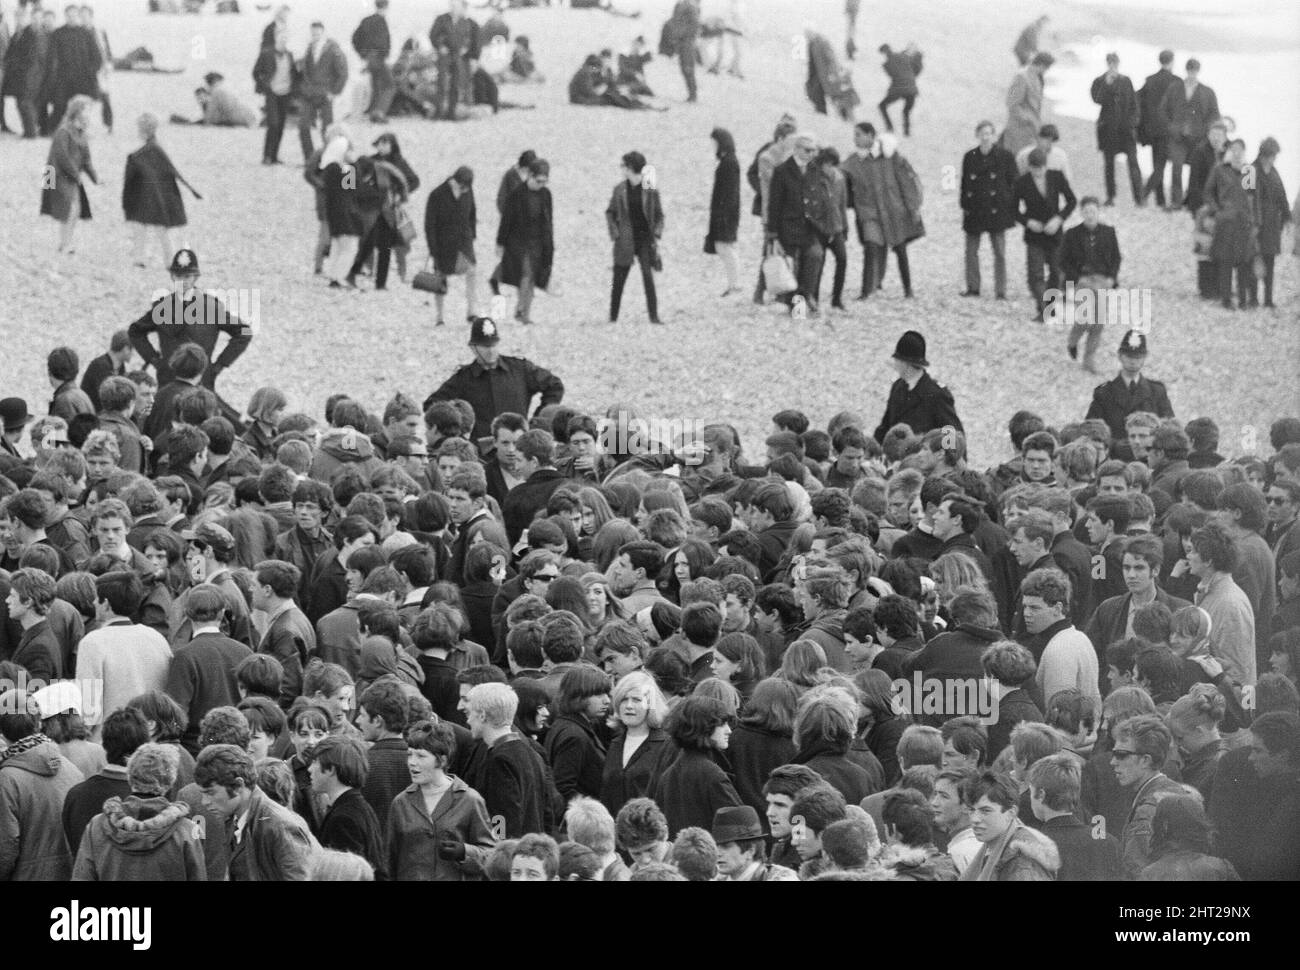 Die Mods und Rockers waren zwei widersprüchliche britische Jugendsubkulturen von Anfang bis Mitte 1960s. Die Berichterstattung über die Kämpfe von Mods und Rockern im Jahr 1964 löste eine moralische Panik über britische Jugendliche aus, und die beiden Gruppen wurden als Volksteufel bezeichnet. Mods gerundet nach Zusammenstößen mit Rockern in Brighton. 18.. April 1965. Stockfoto